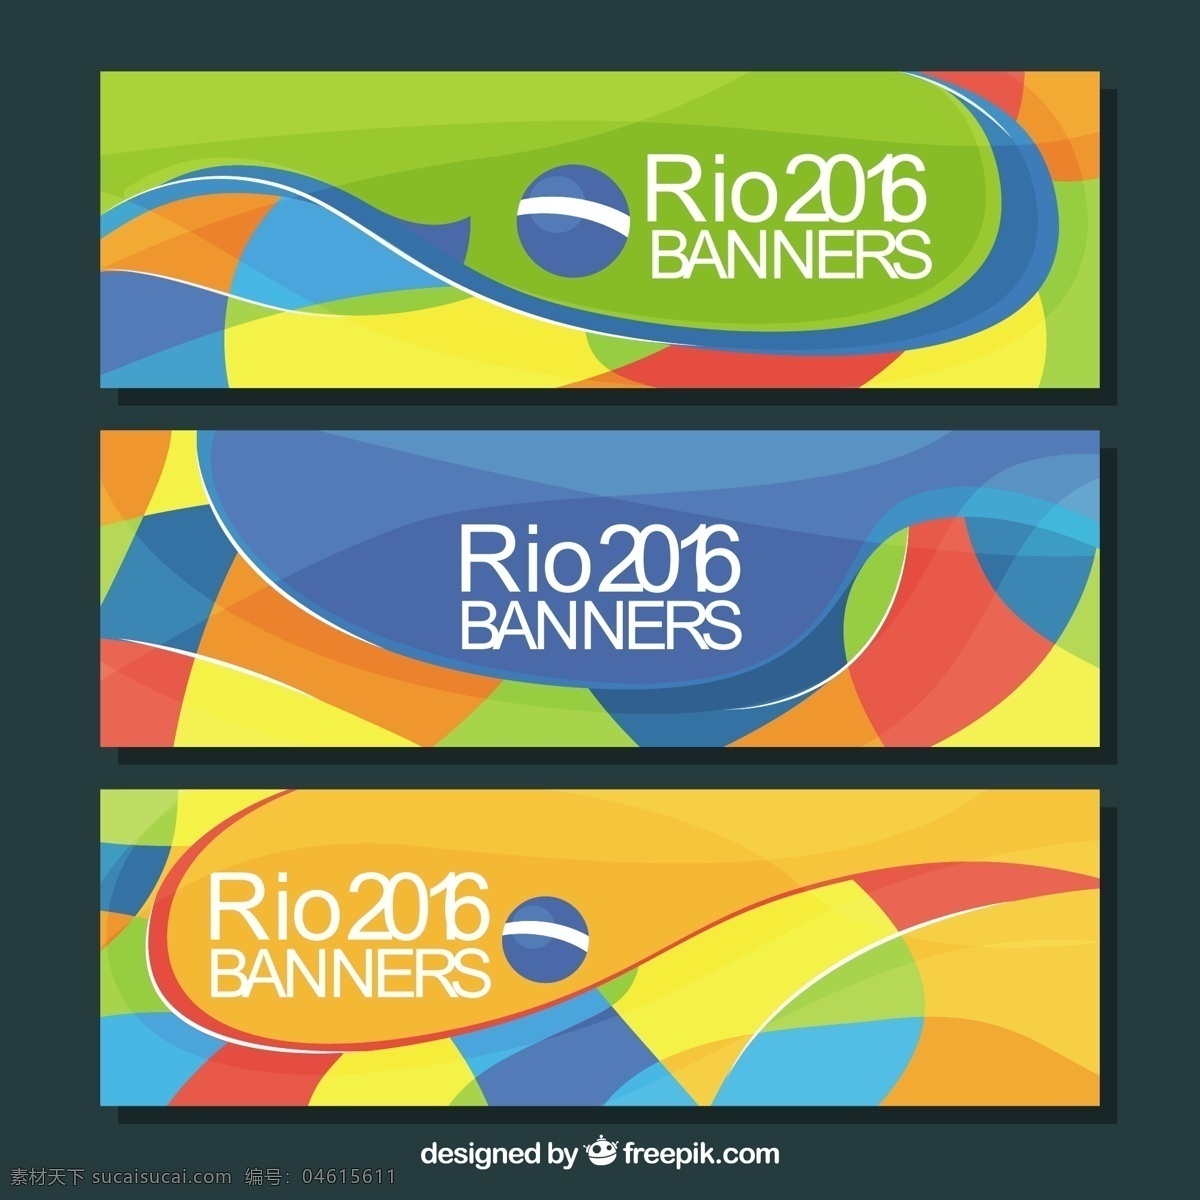 巴西彩色横幅 旗帜 抽象 夏季 运动 健身 健康 横幅 线条 造型 活动 多彩 2016 现代 抽象线条 训练 游戏 巴西